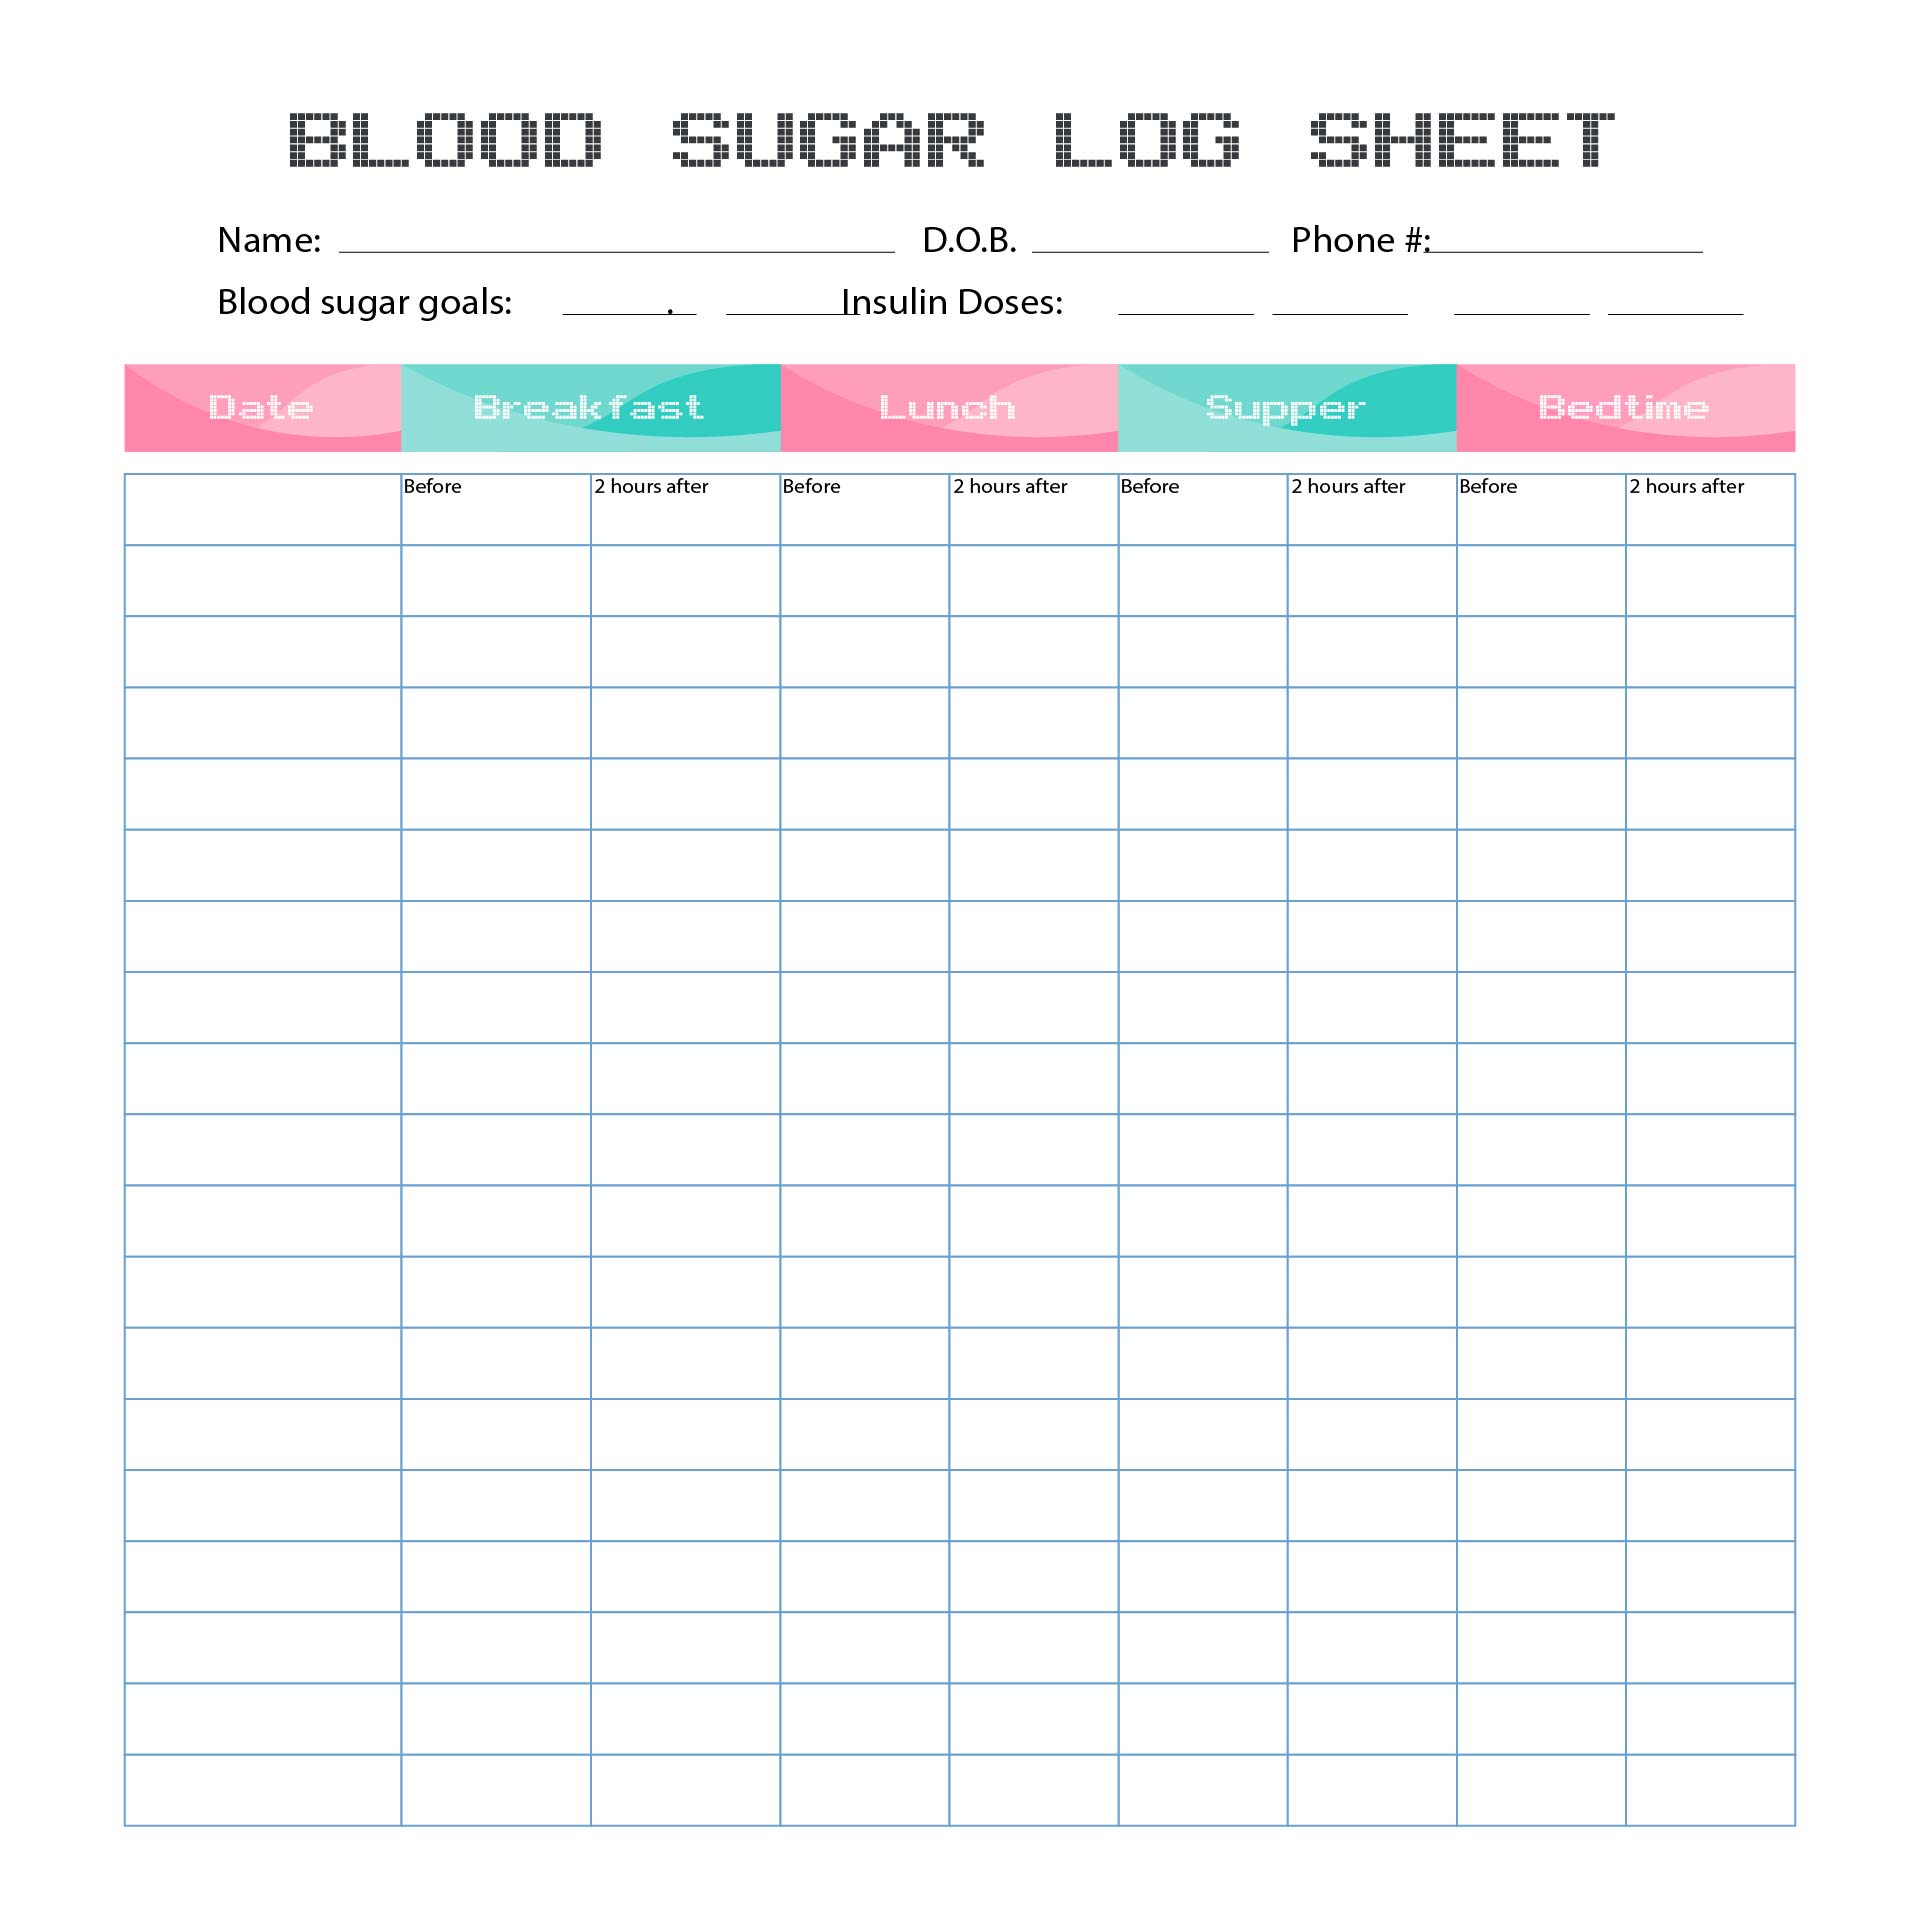 Diabetes Blood Sugar Log Sheet Printable